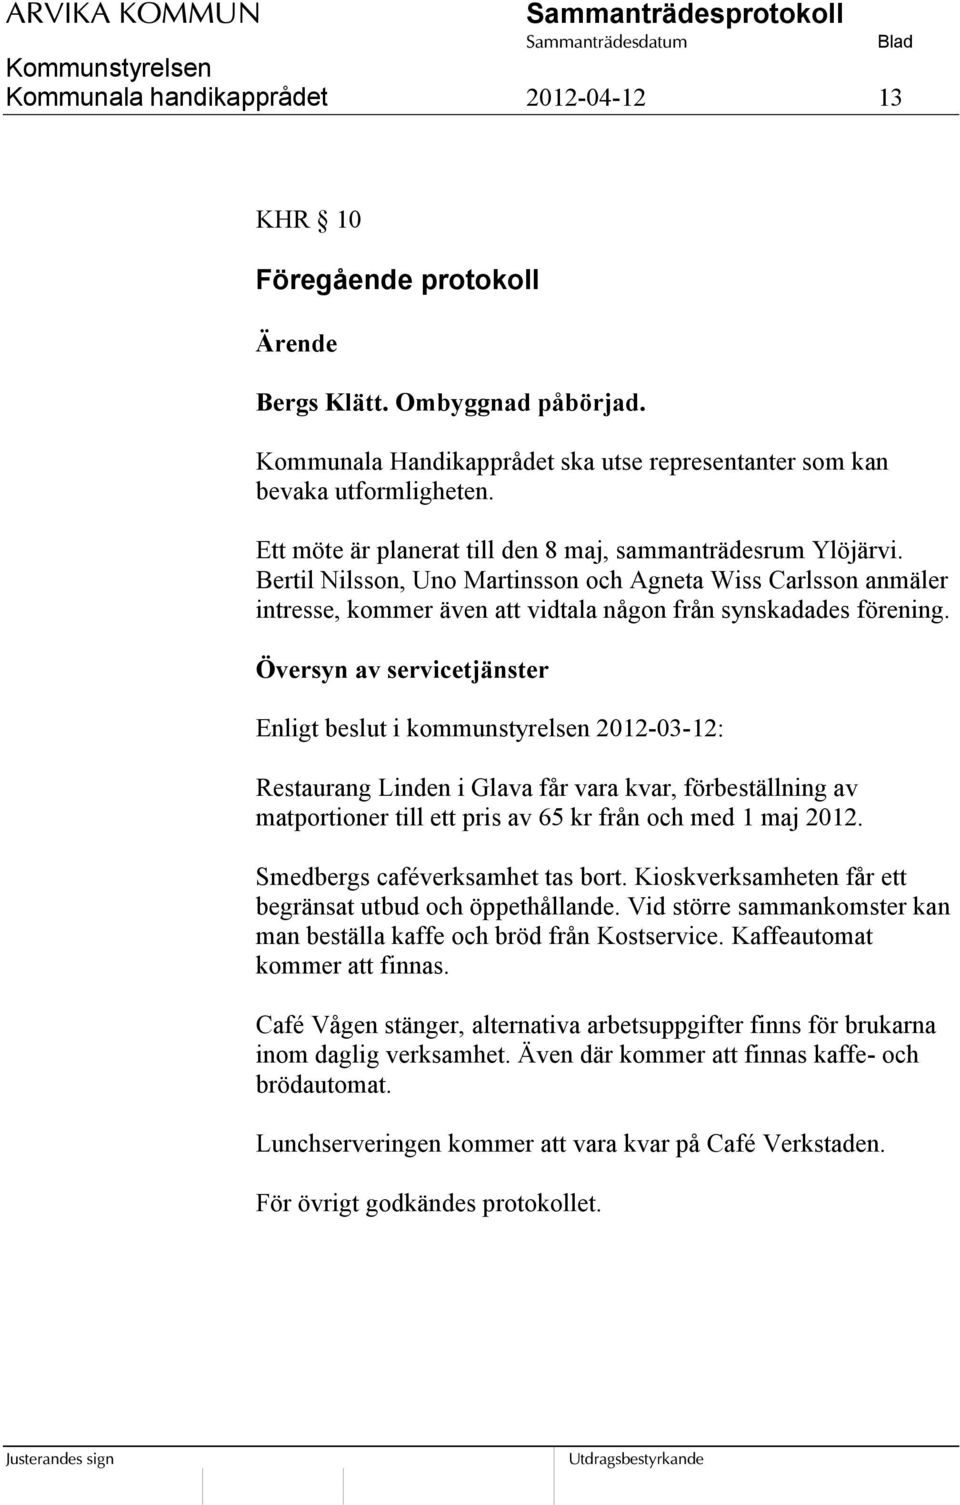 Översyn av servicetjänster Enligt beslut i kommunstyrelsen 2012-03-12: Restaurang Linden i Glava får vara kvar, förbeställning av matportioner till ett pris av 65 kr från och med 1 maj 2012.